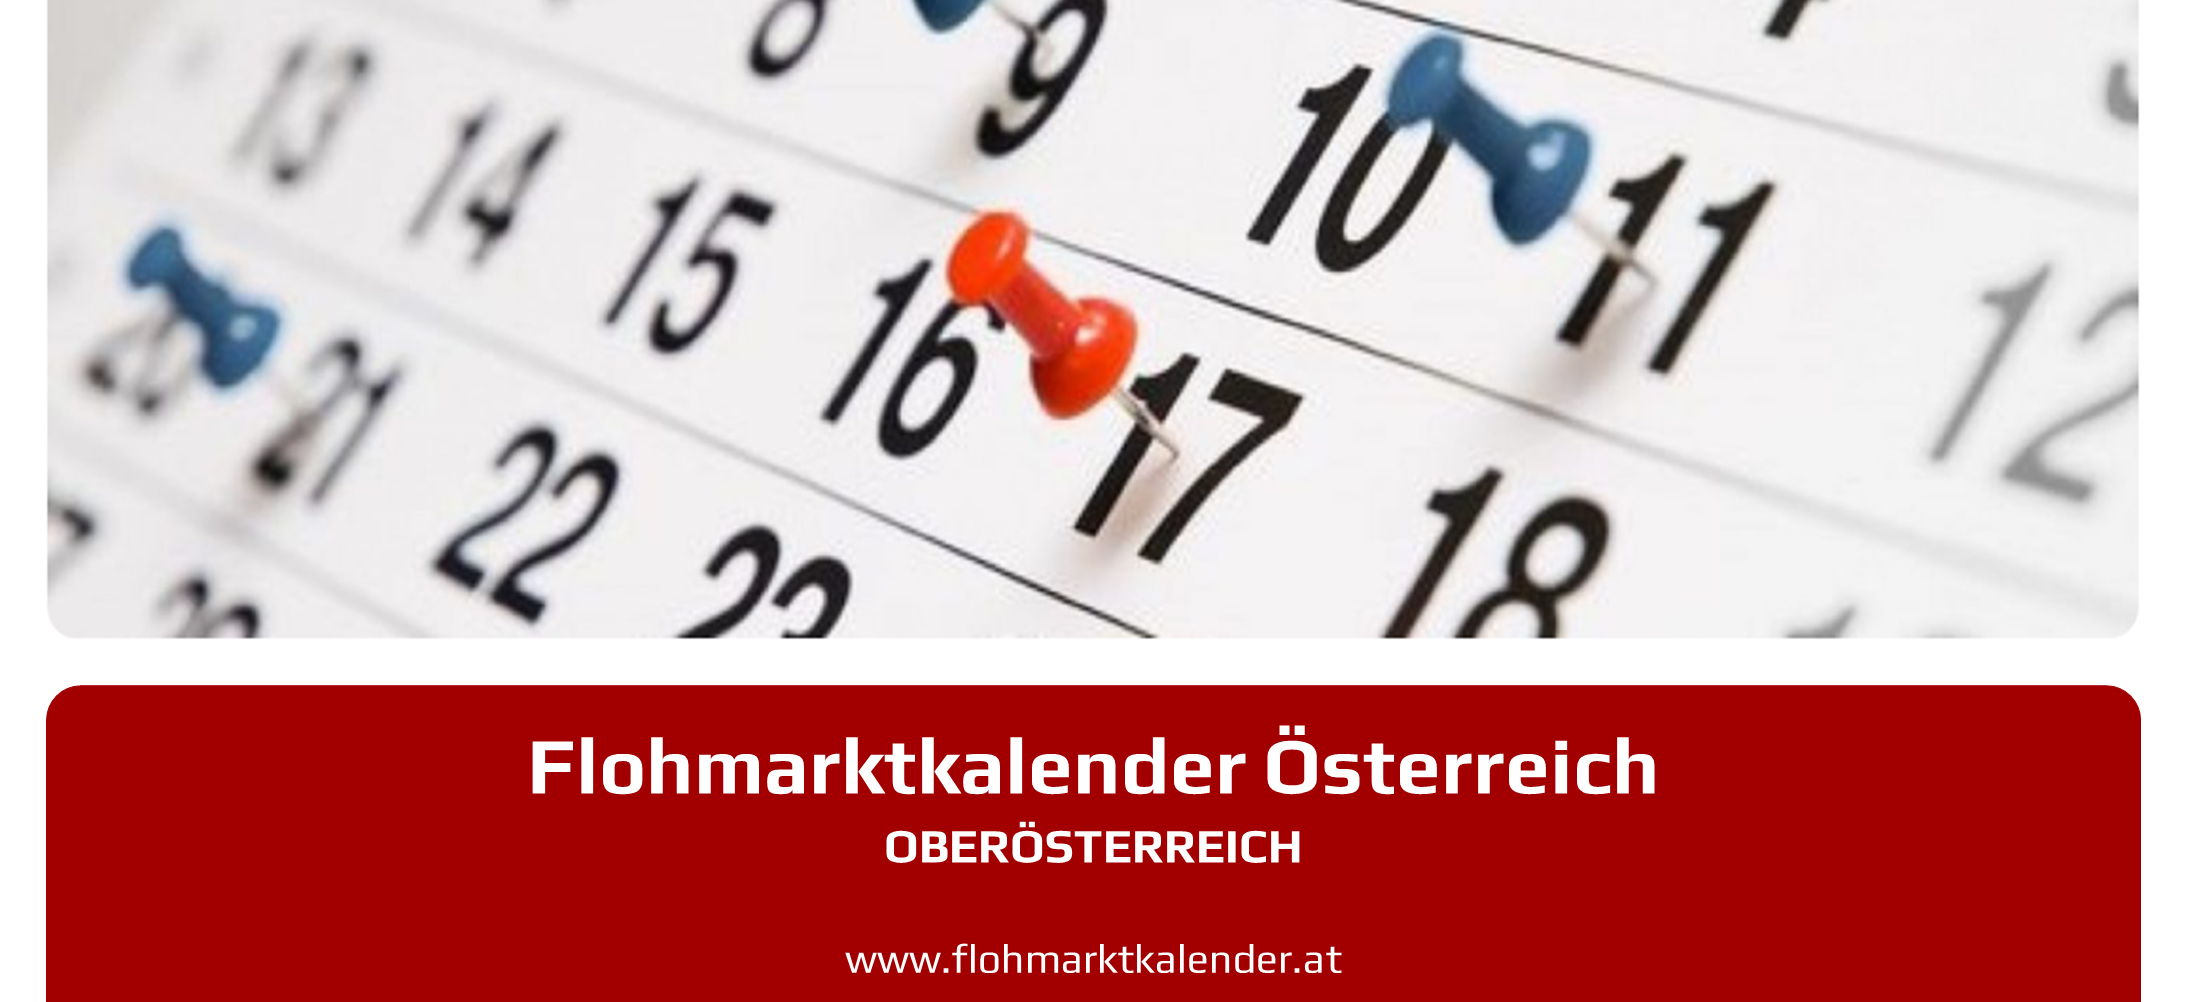 Flohmarktkalender Oberoesterreich 5